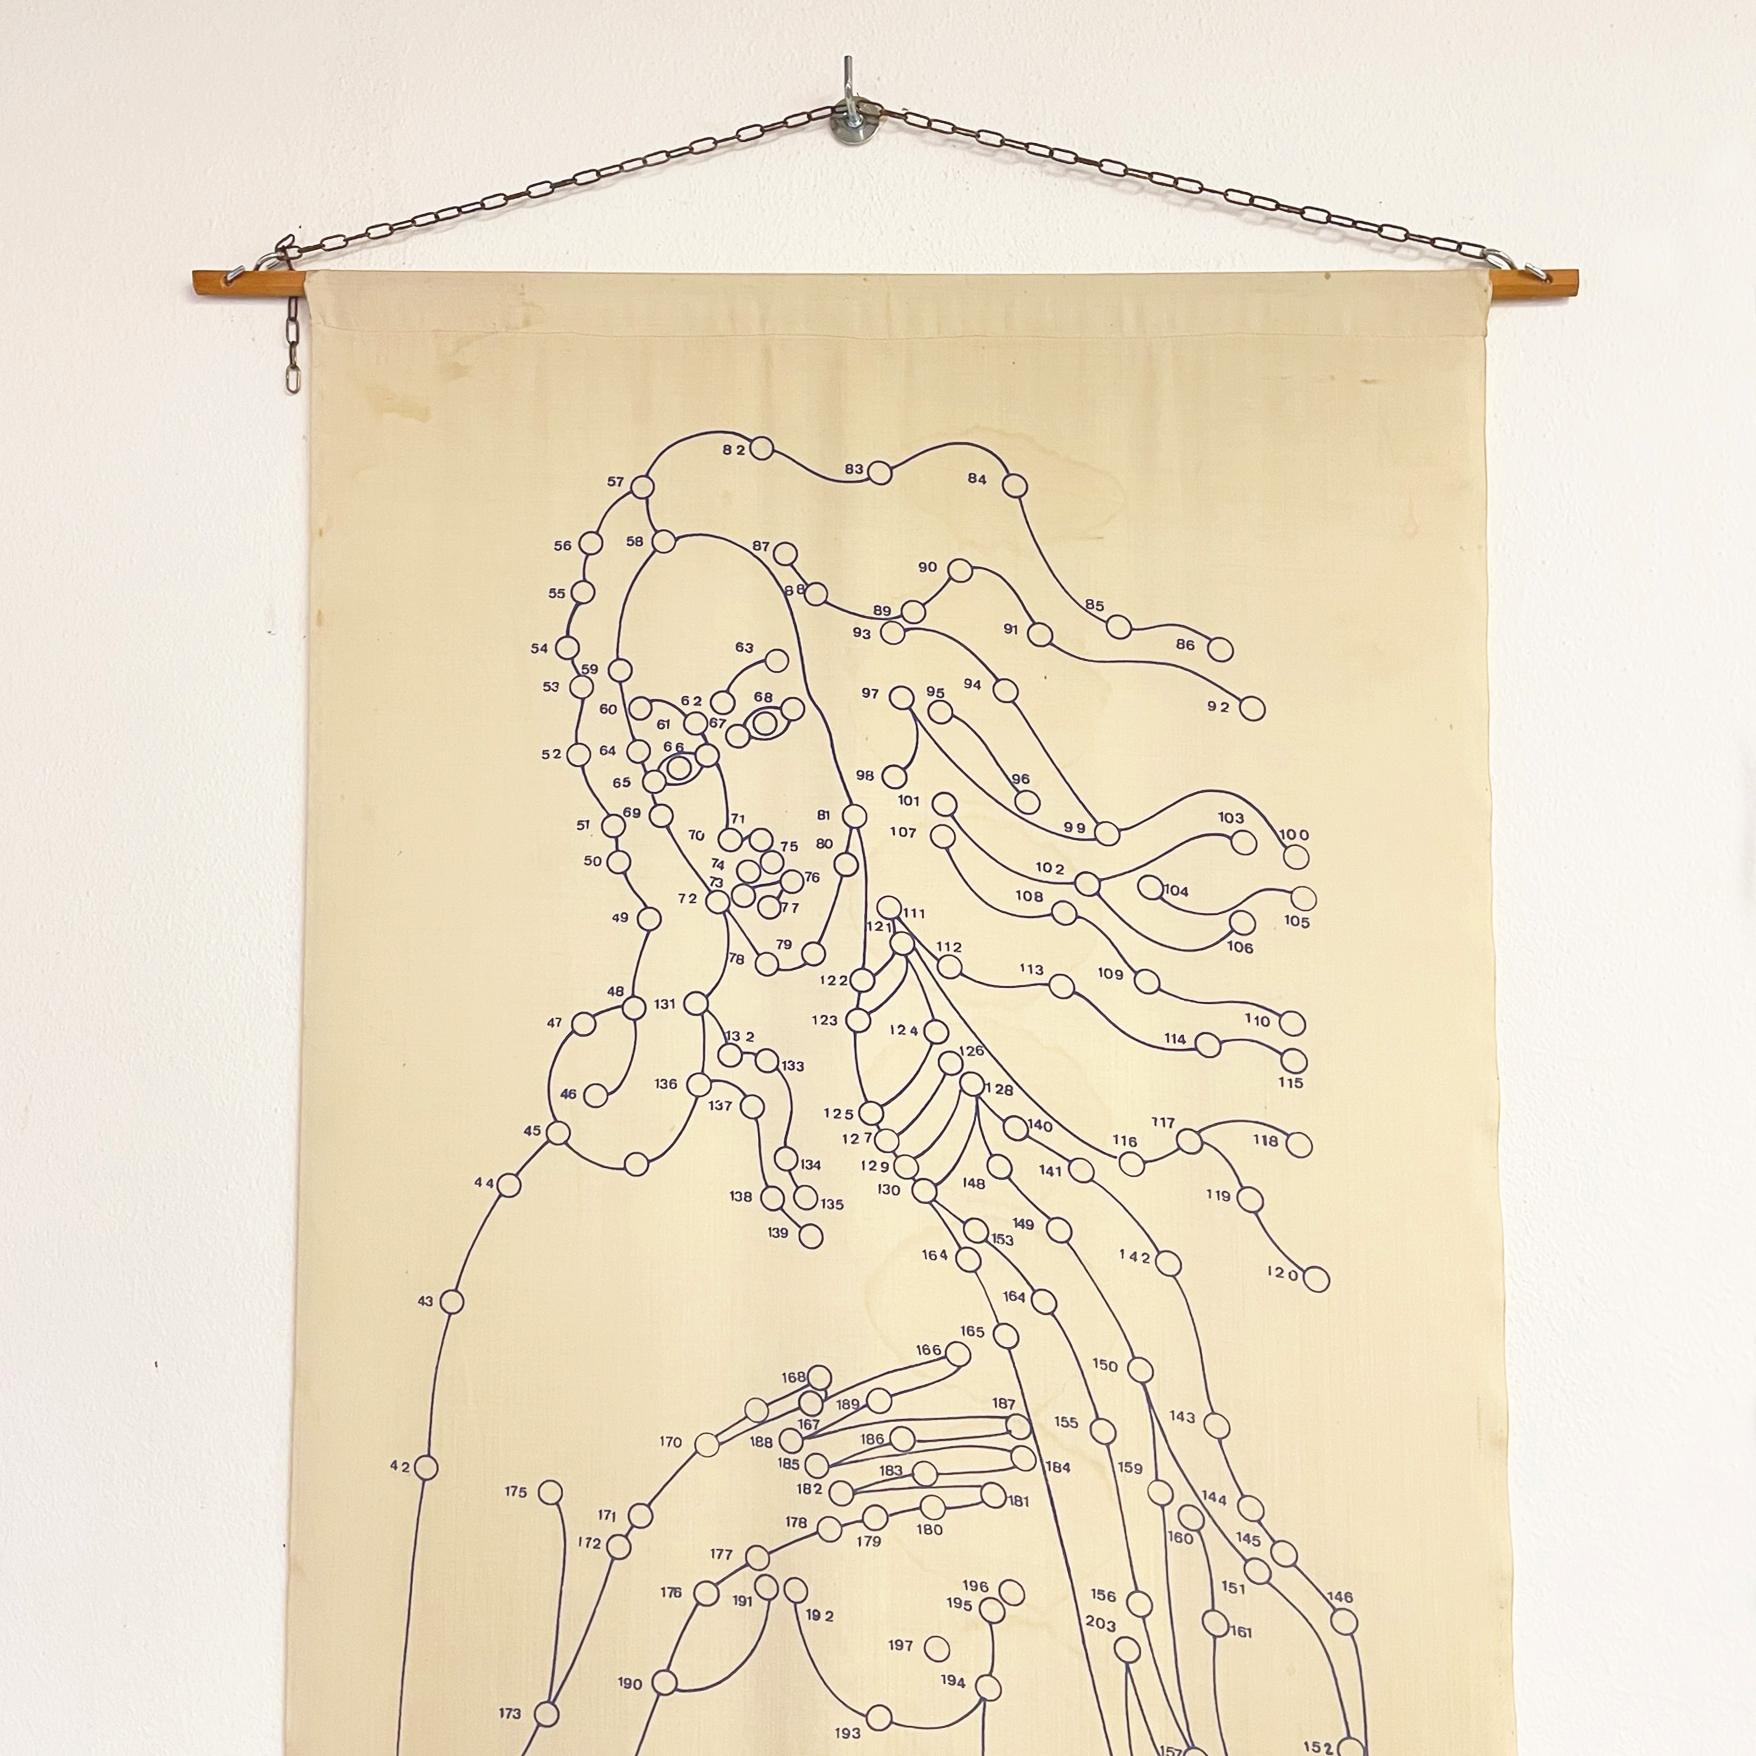 Impression murale sur tissu de la Vénus de Botticelli par Pino Tovaglia, 1969
Impression murale sur tissu soutenue par deux tiges en bois de section ronde en haut et en bas. L'estampe présente une illustration du contour de la Vénus de Botticelli